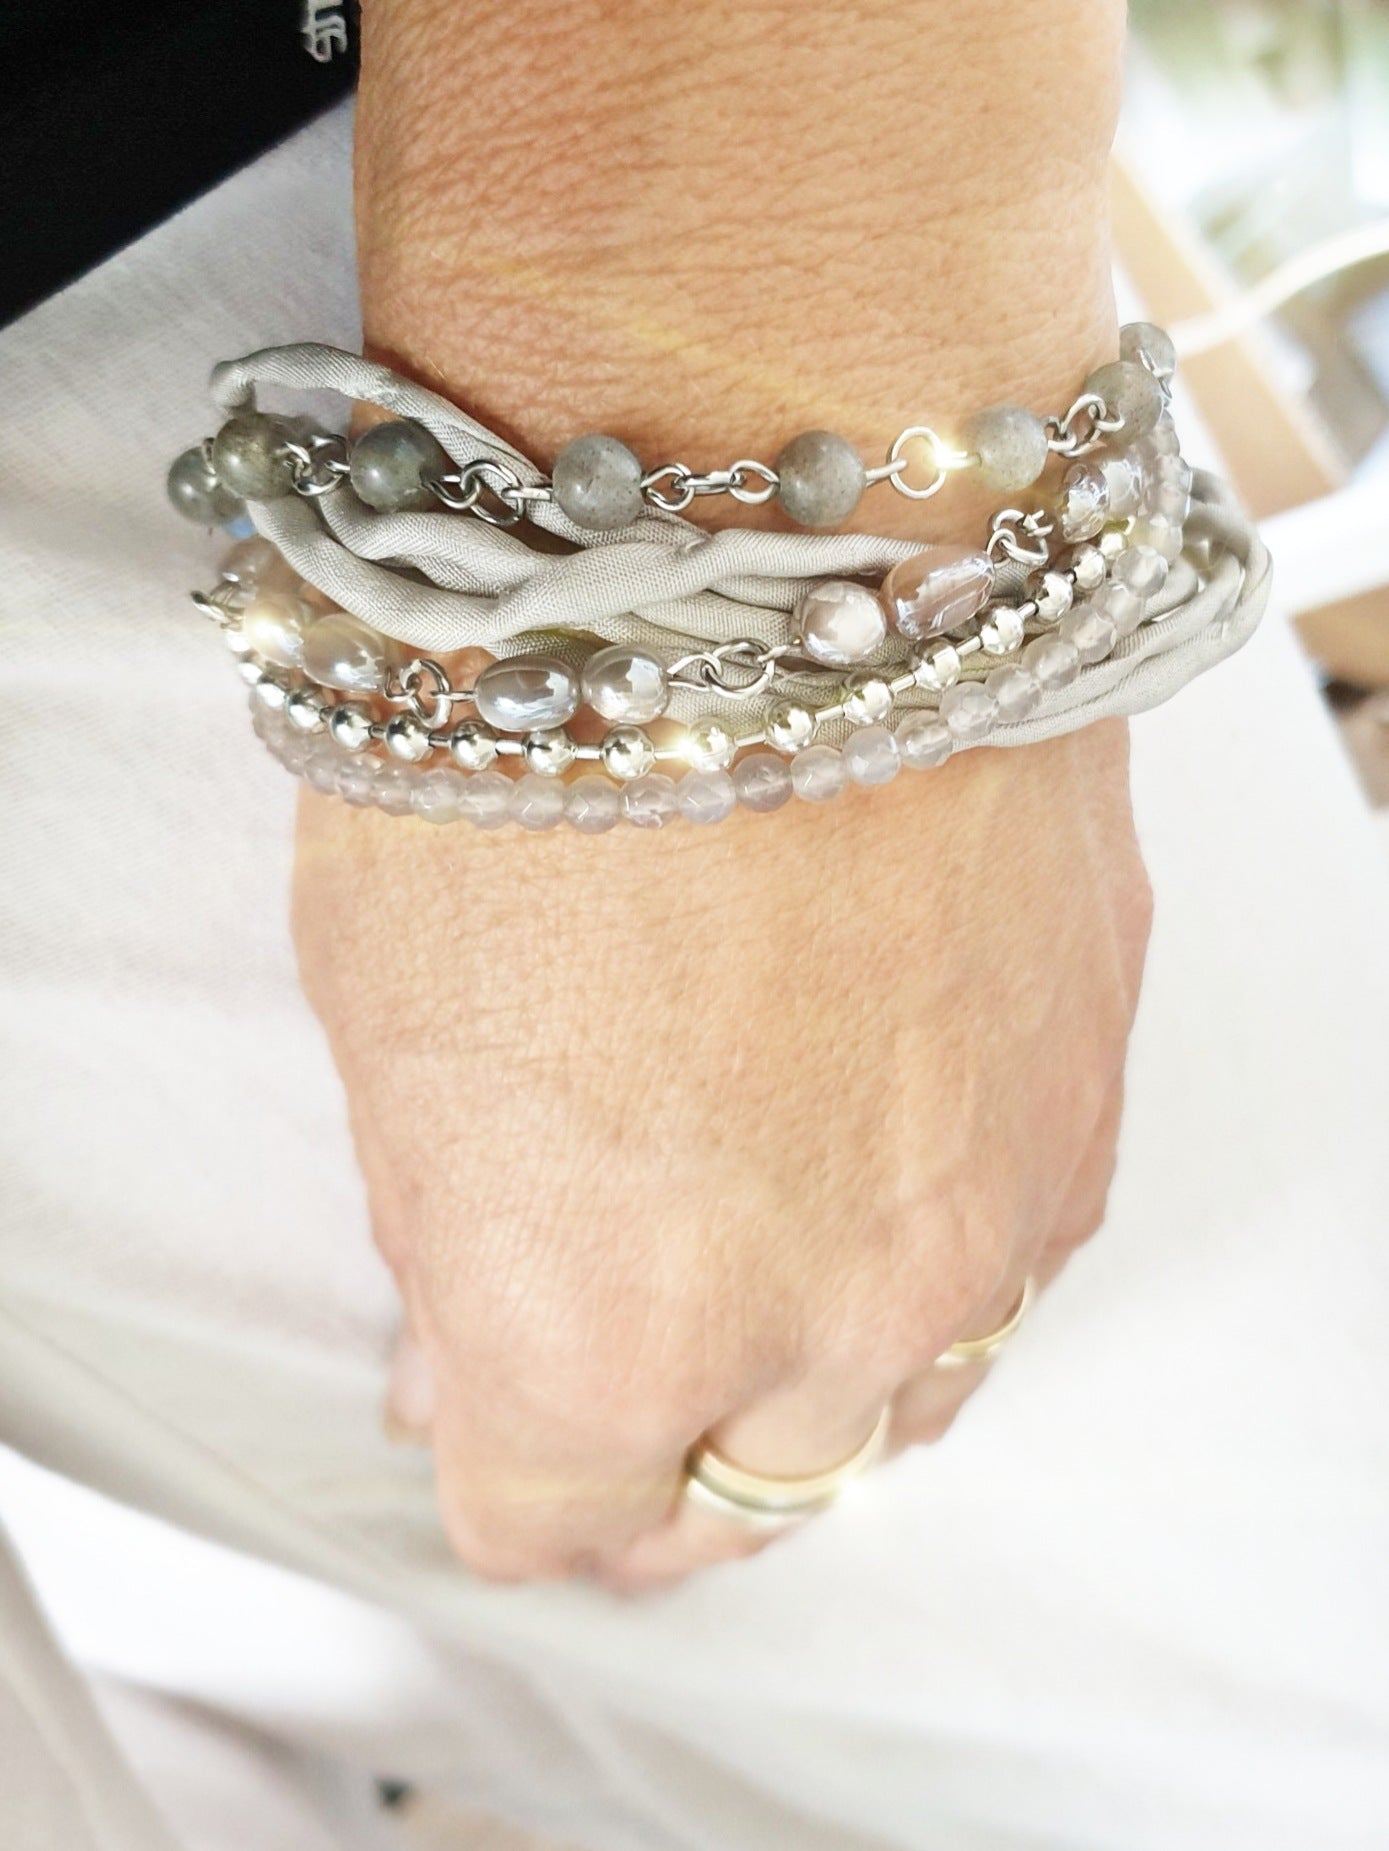 Armband im Boho Style mit unterschiedlichen Edelsteinen Mondstein, Labradorit und Achat in Grau taupe tönen